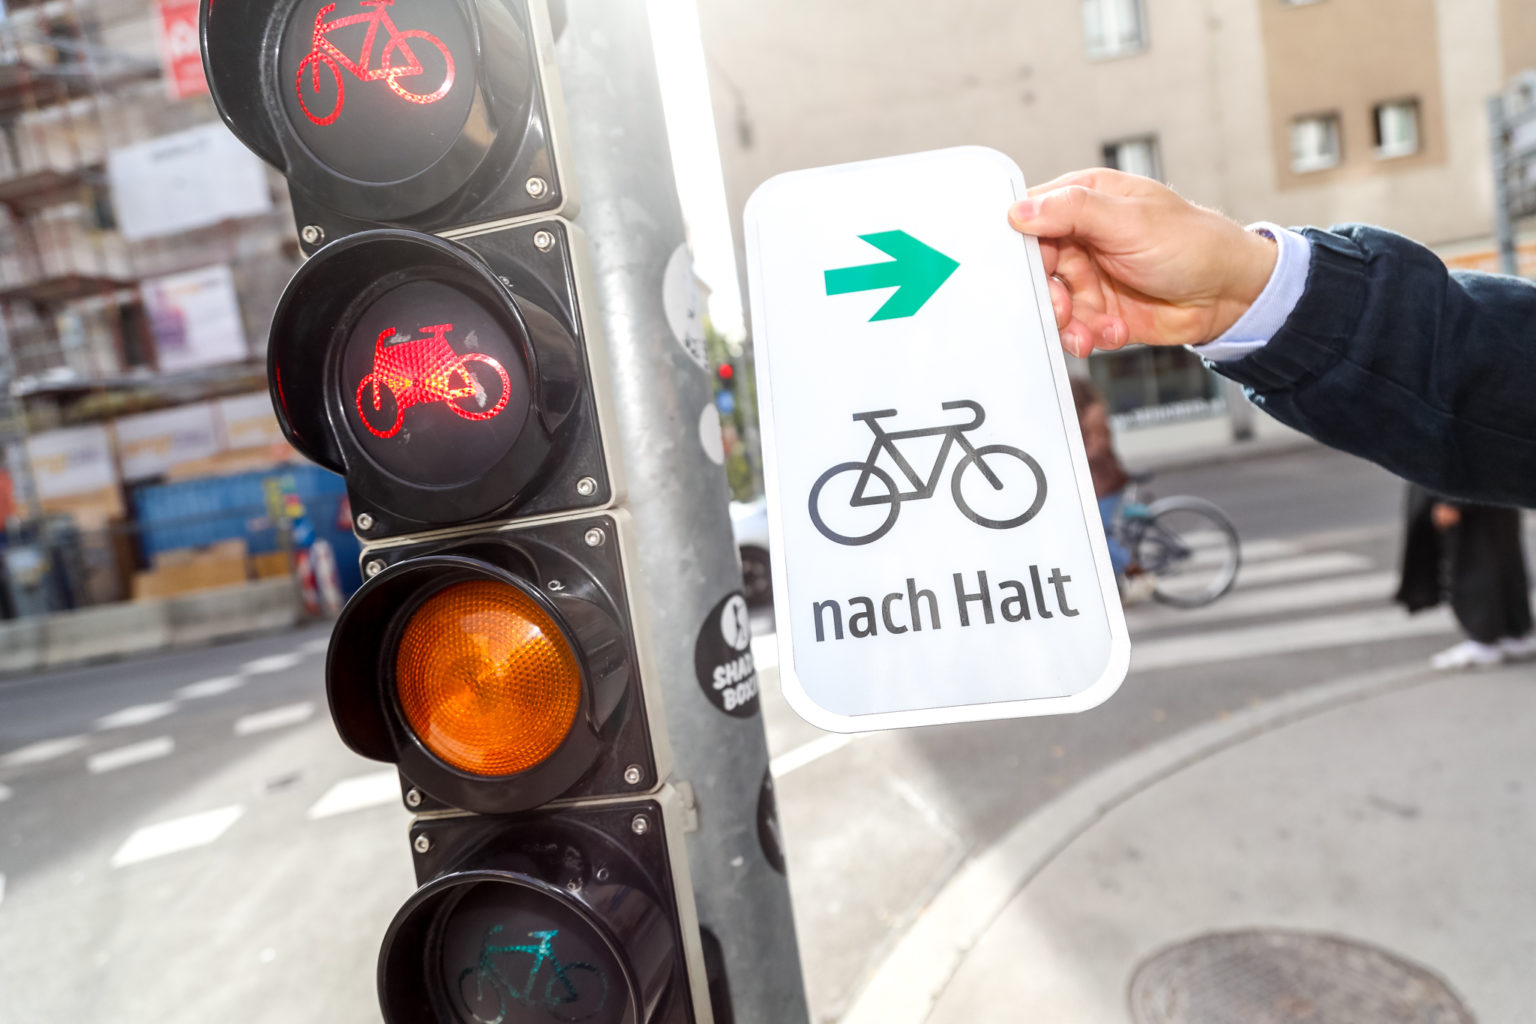 Nová značka umožňuje cyklistům odbočení vpravo i na červenou. Foto: PID/Christian Fürthner